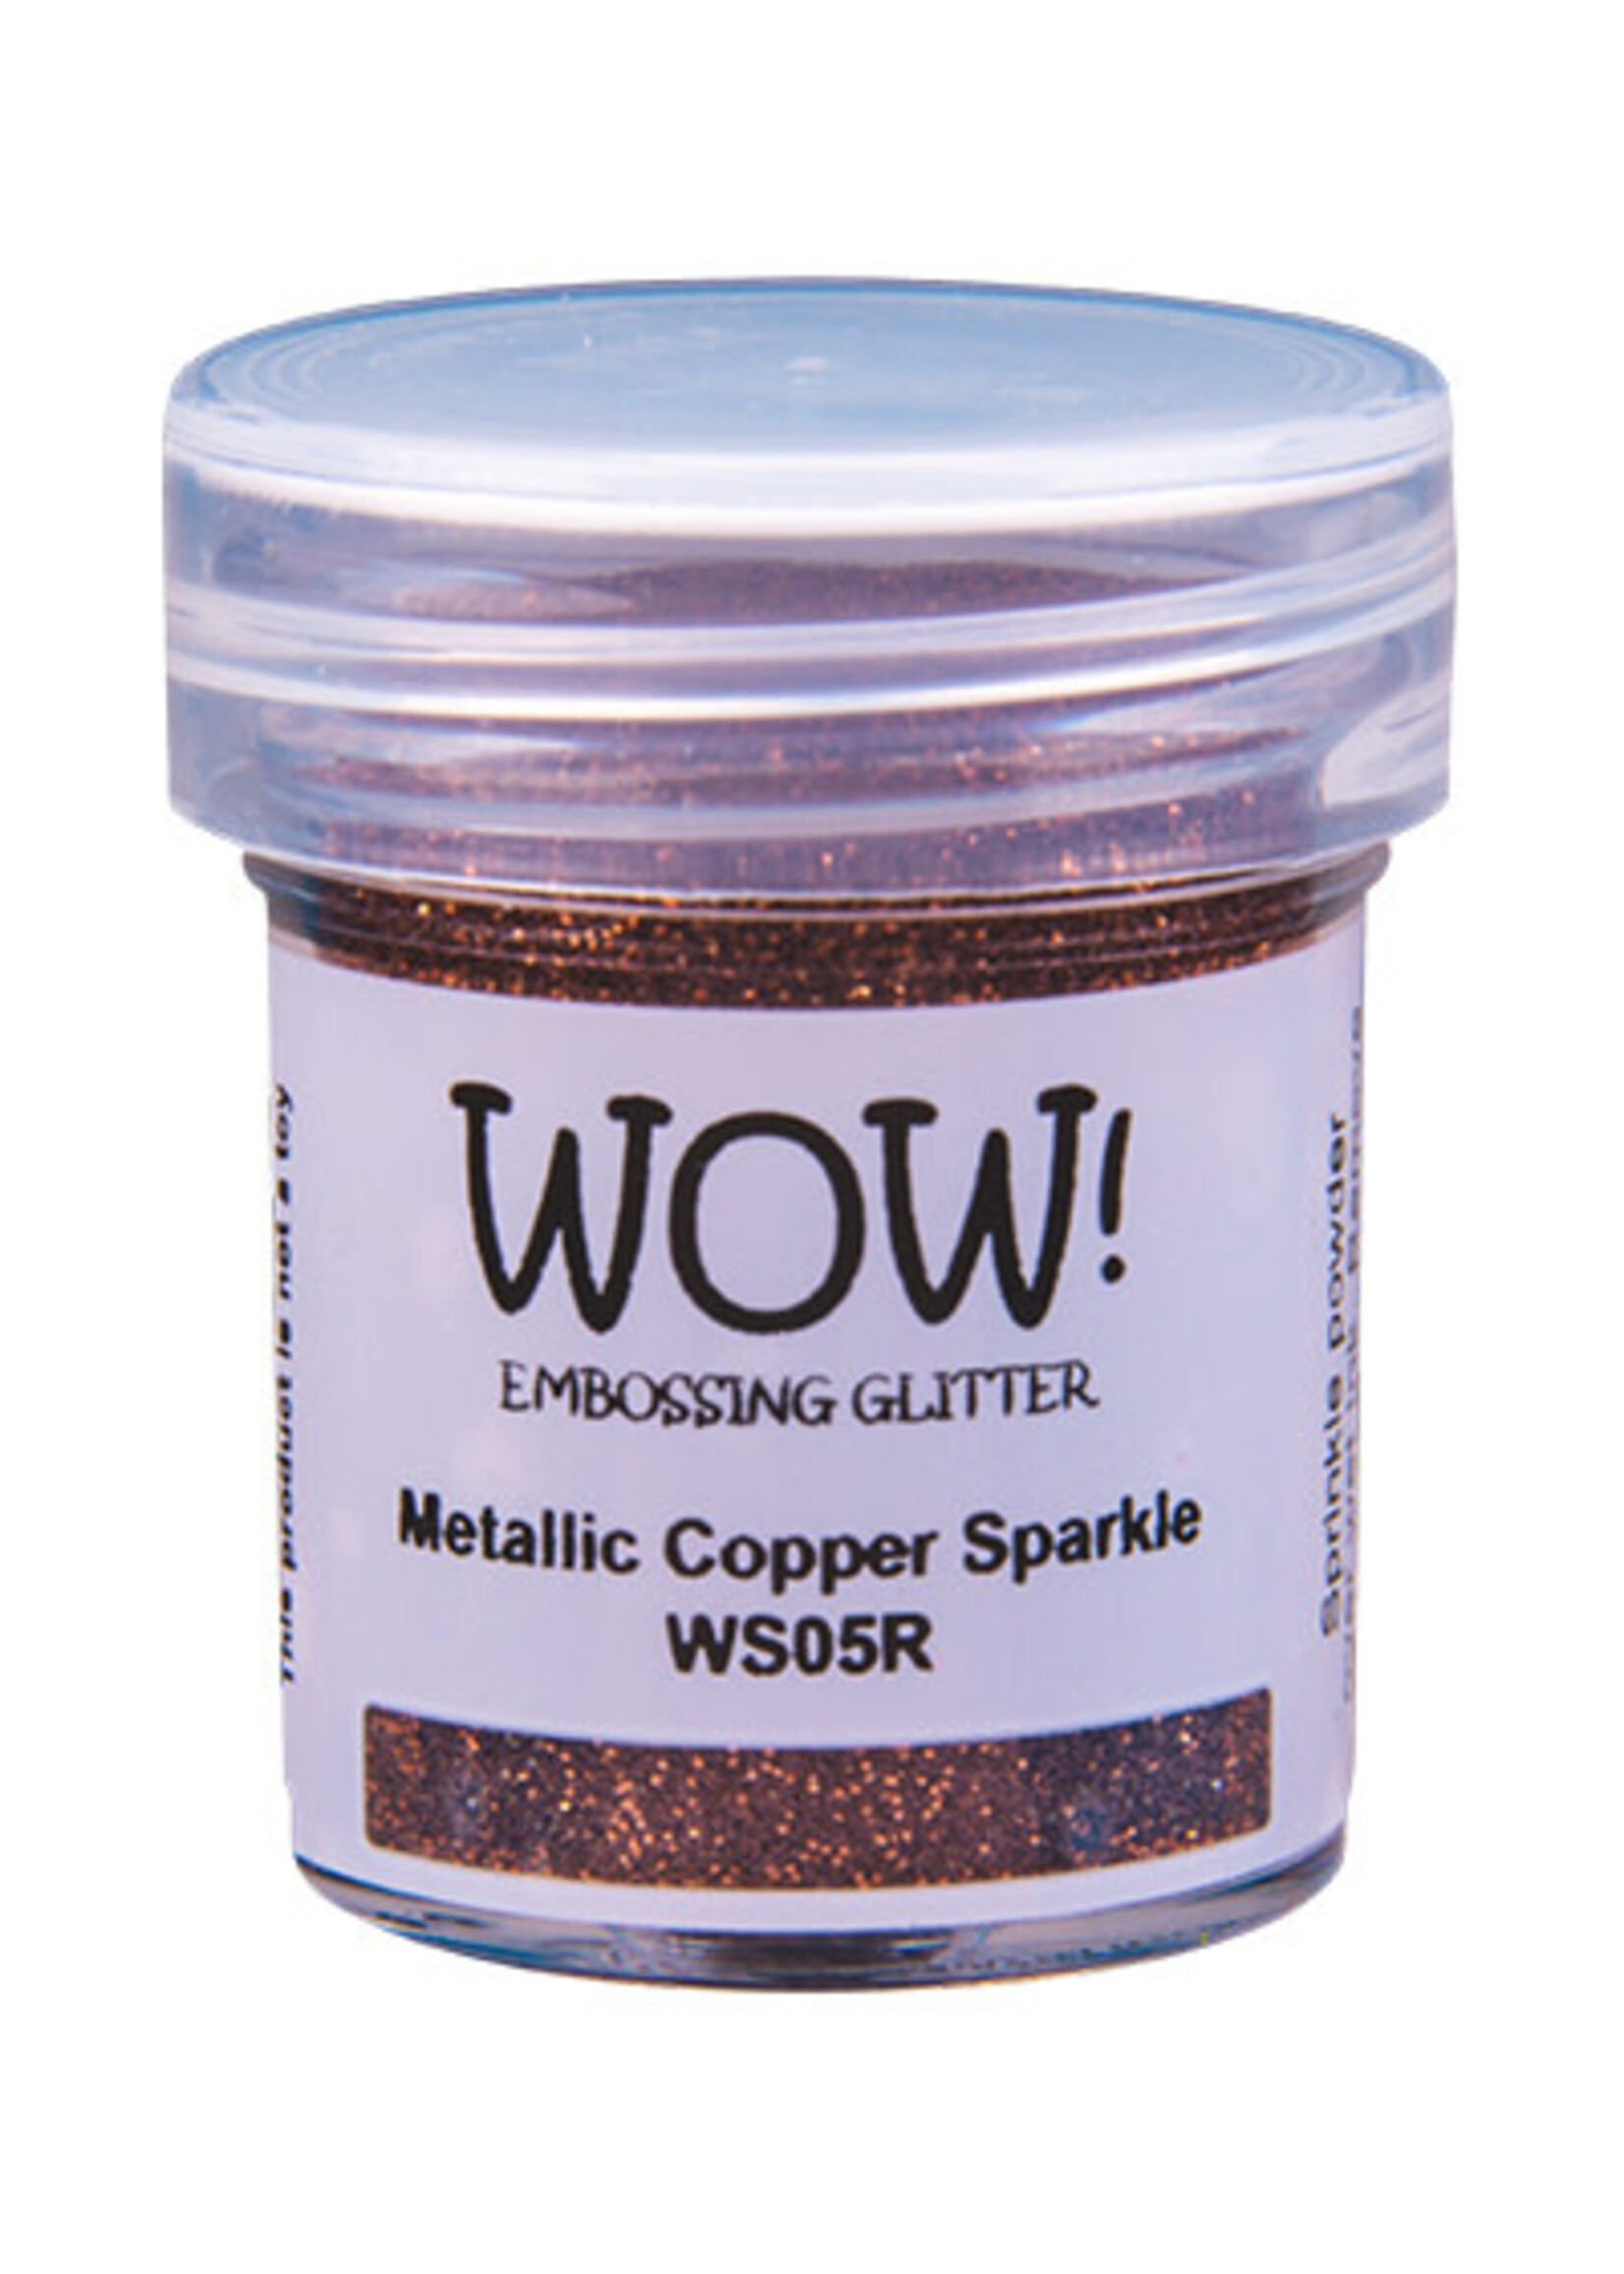 Wow! WS05R - Metallic Copper Sparkle